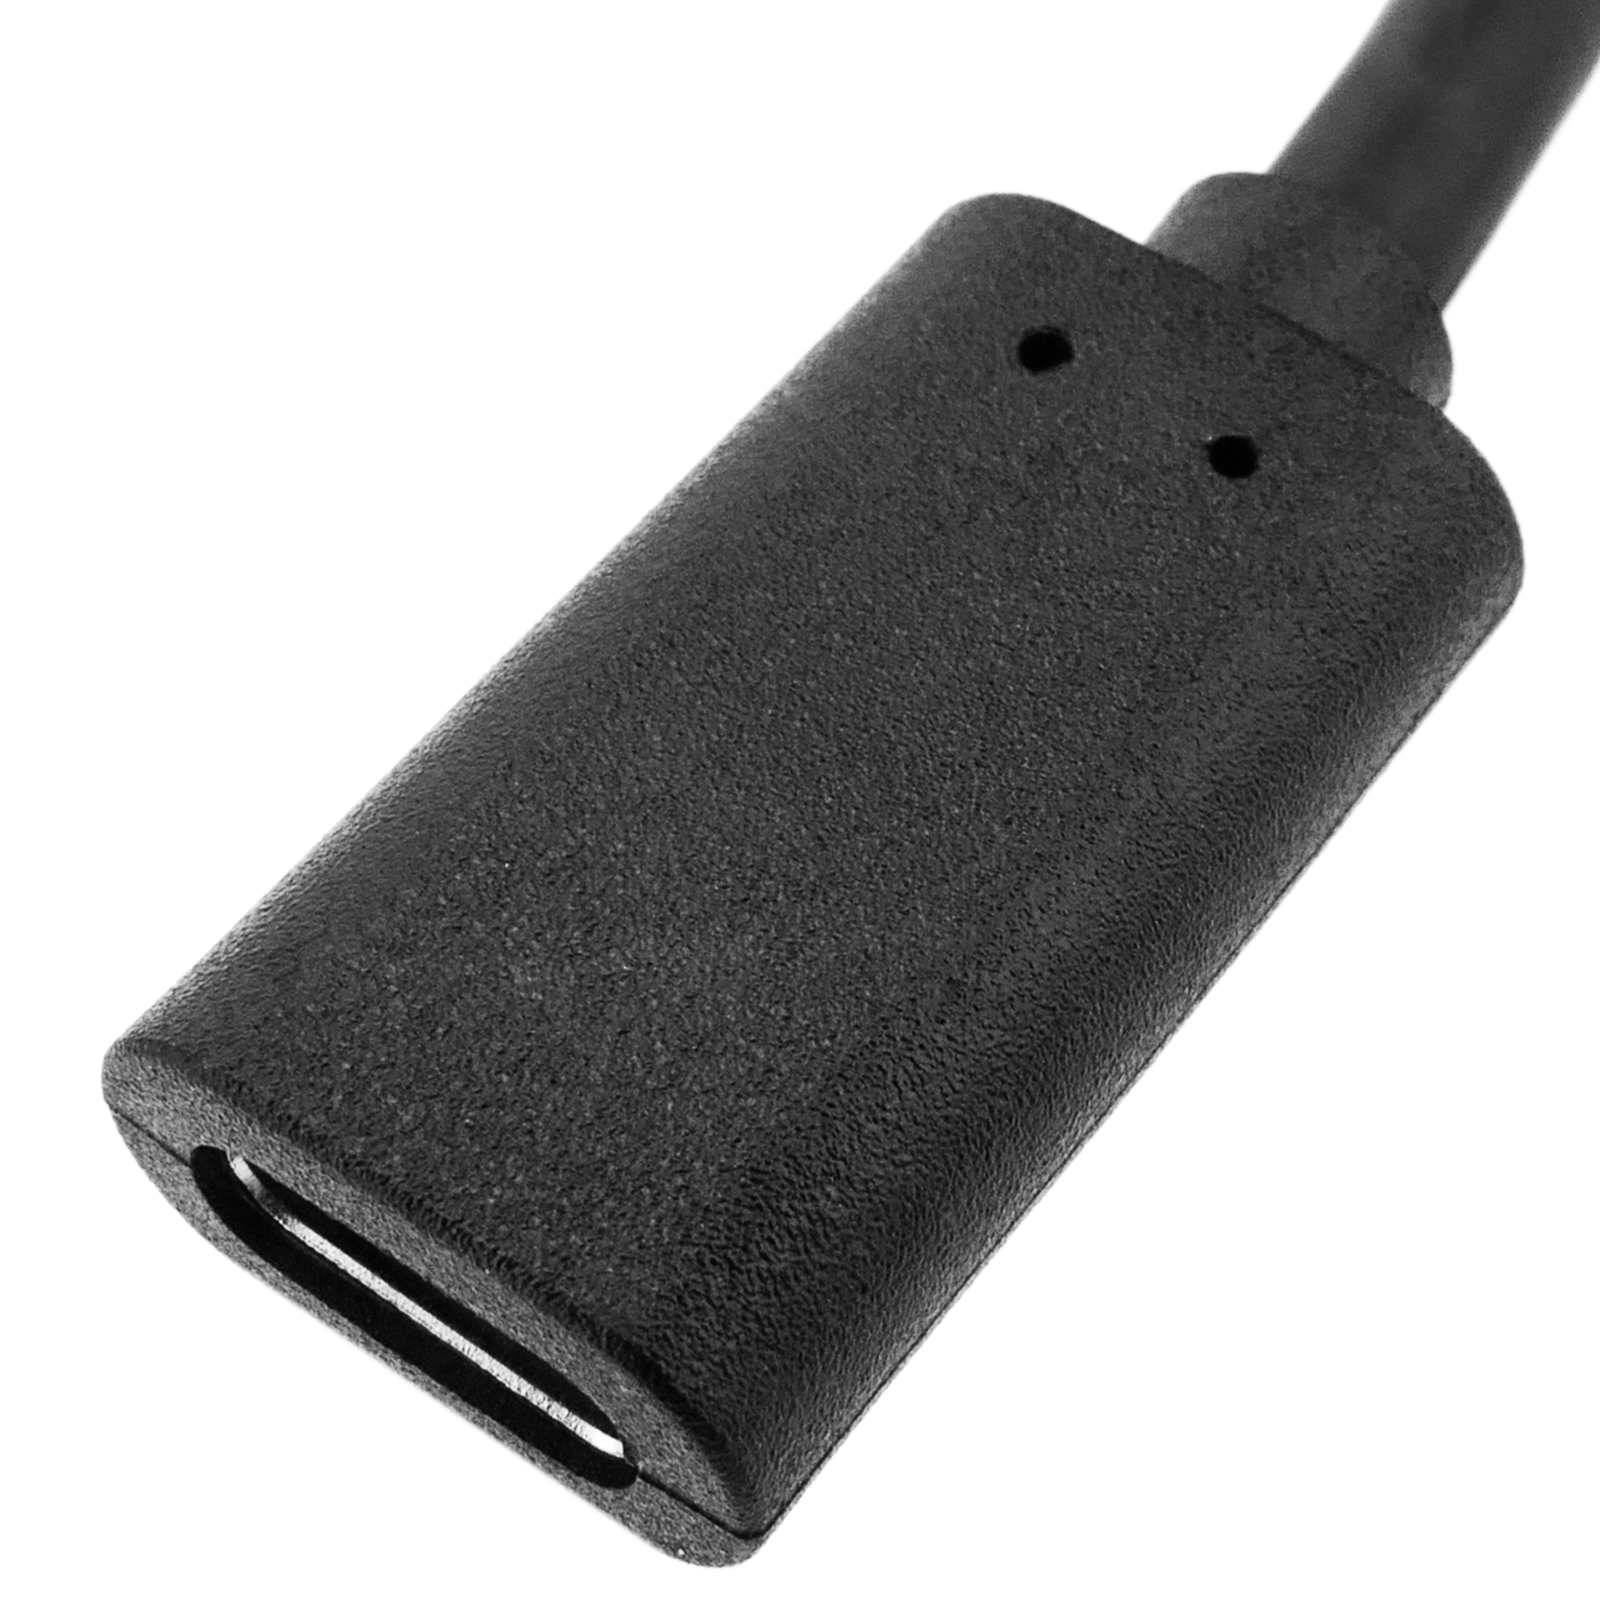 Cable USB tipo C 3.0 macho a hembra de 2 m - Cablematic